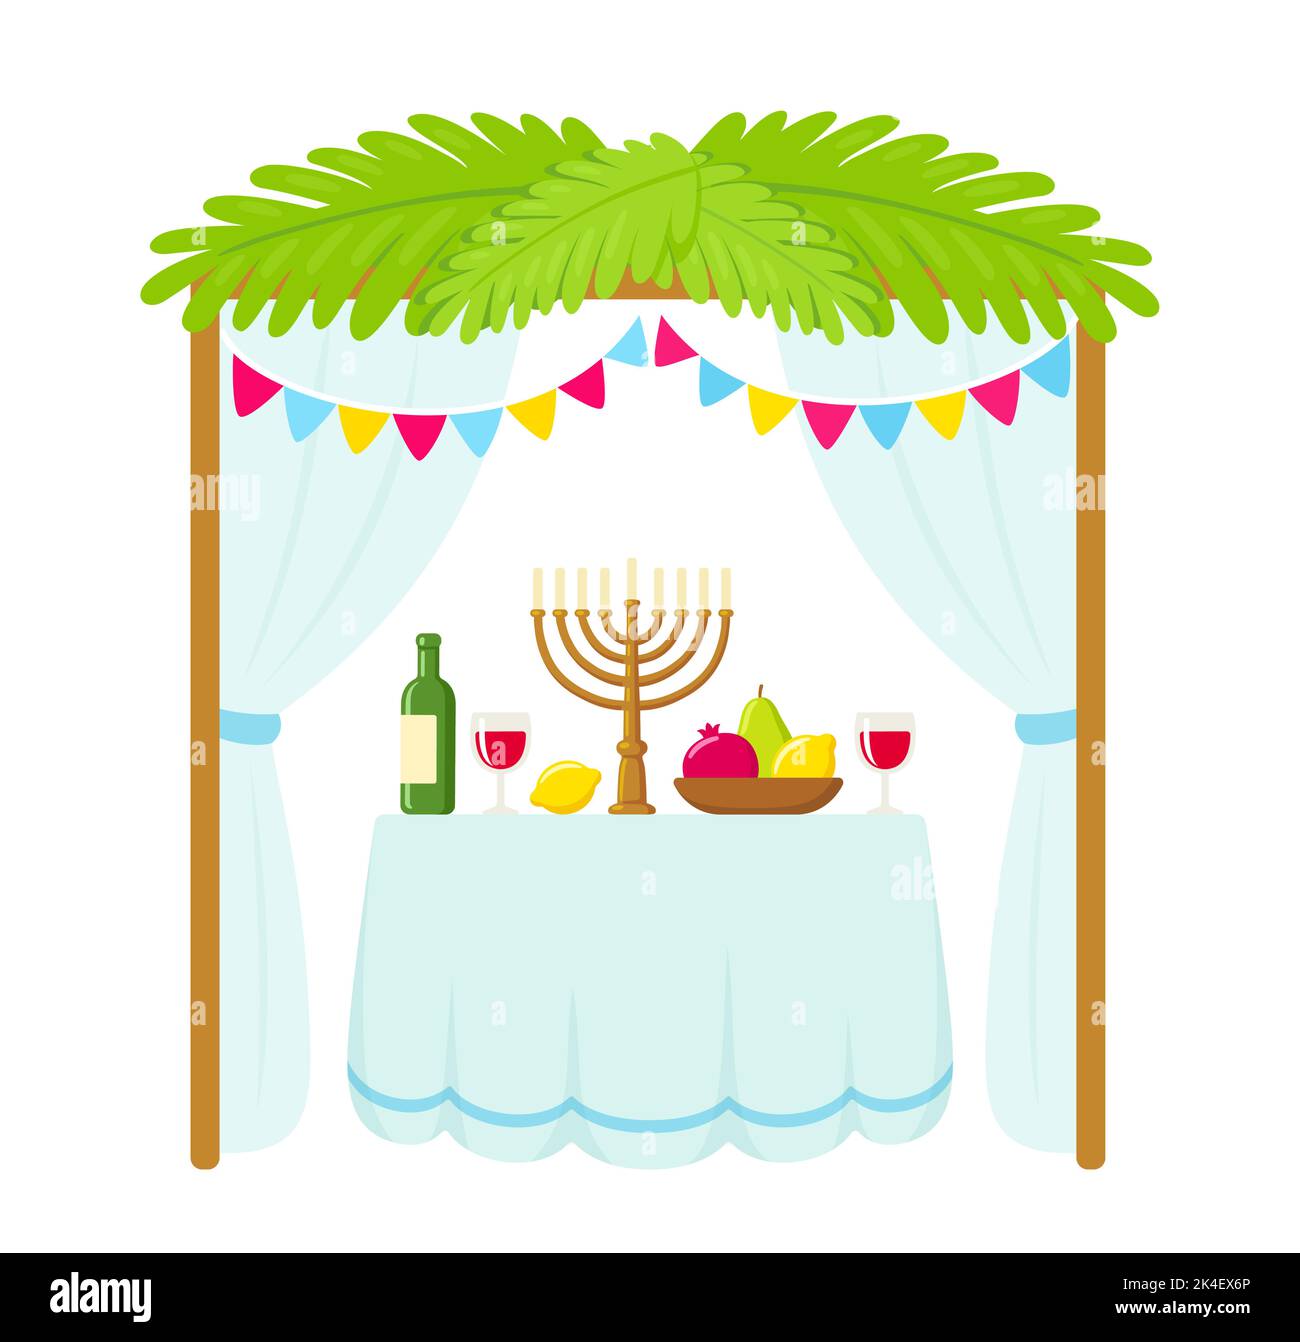 Traditionelle Sukkah Hütte mit Dekorationen und Tisch mit Essen für den jüdischen Feiertag Sukkot. Niedliches Cartoon-Design, isolierte Vektor-Illustration. Stock Vektor